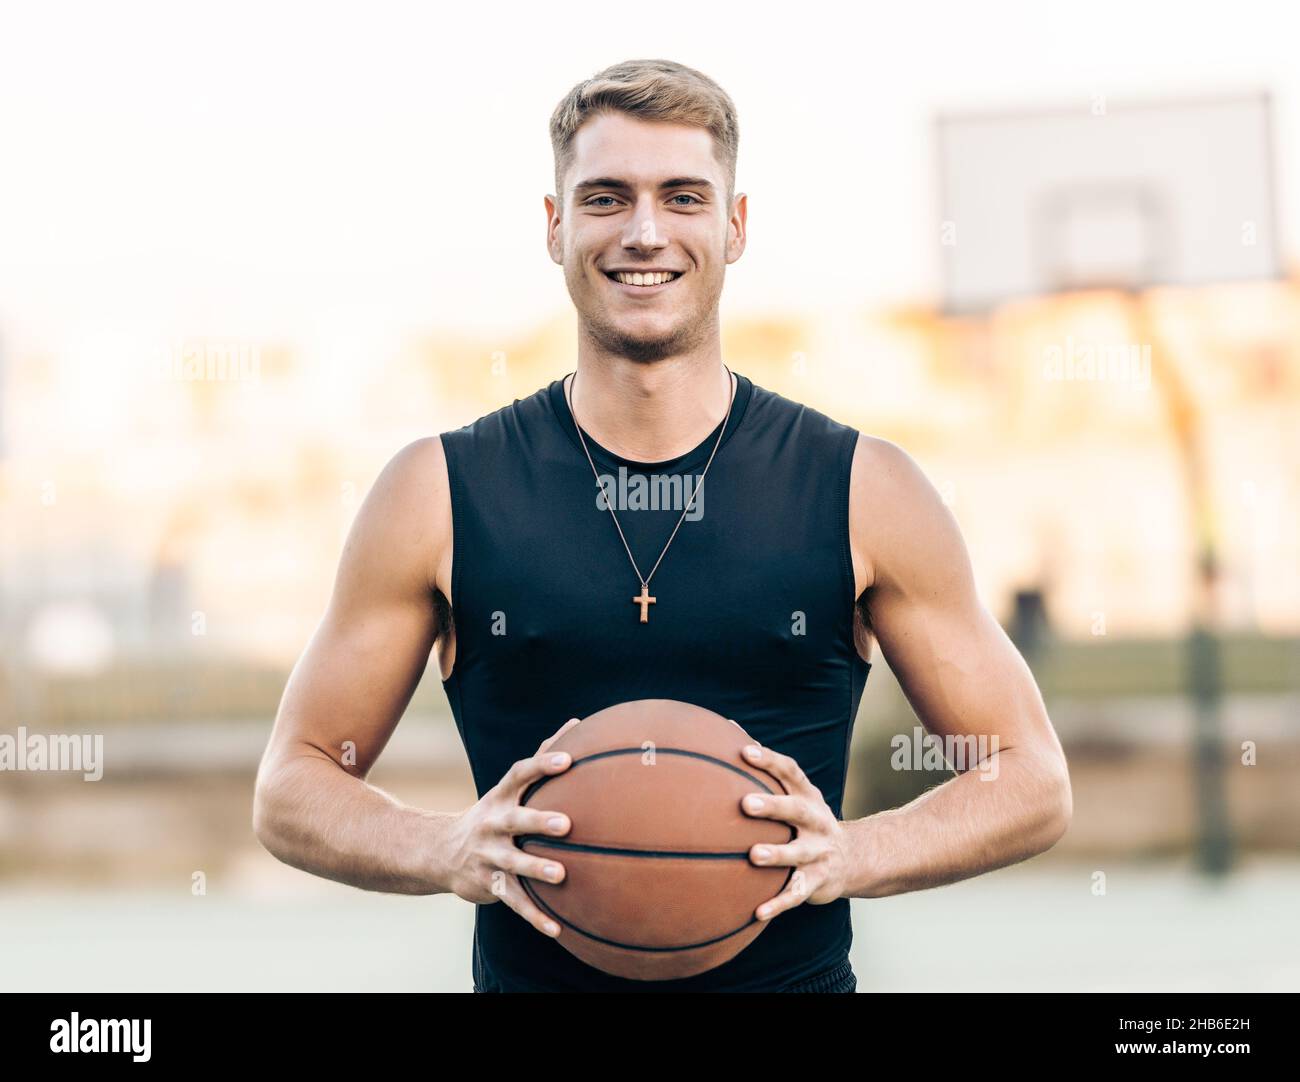 https://c8.alamy.com/comp/2HB6E2H/caucasian-athletic-man-holding-a-basketball-outdoors-2HB6E2H.jpg